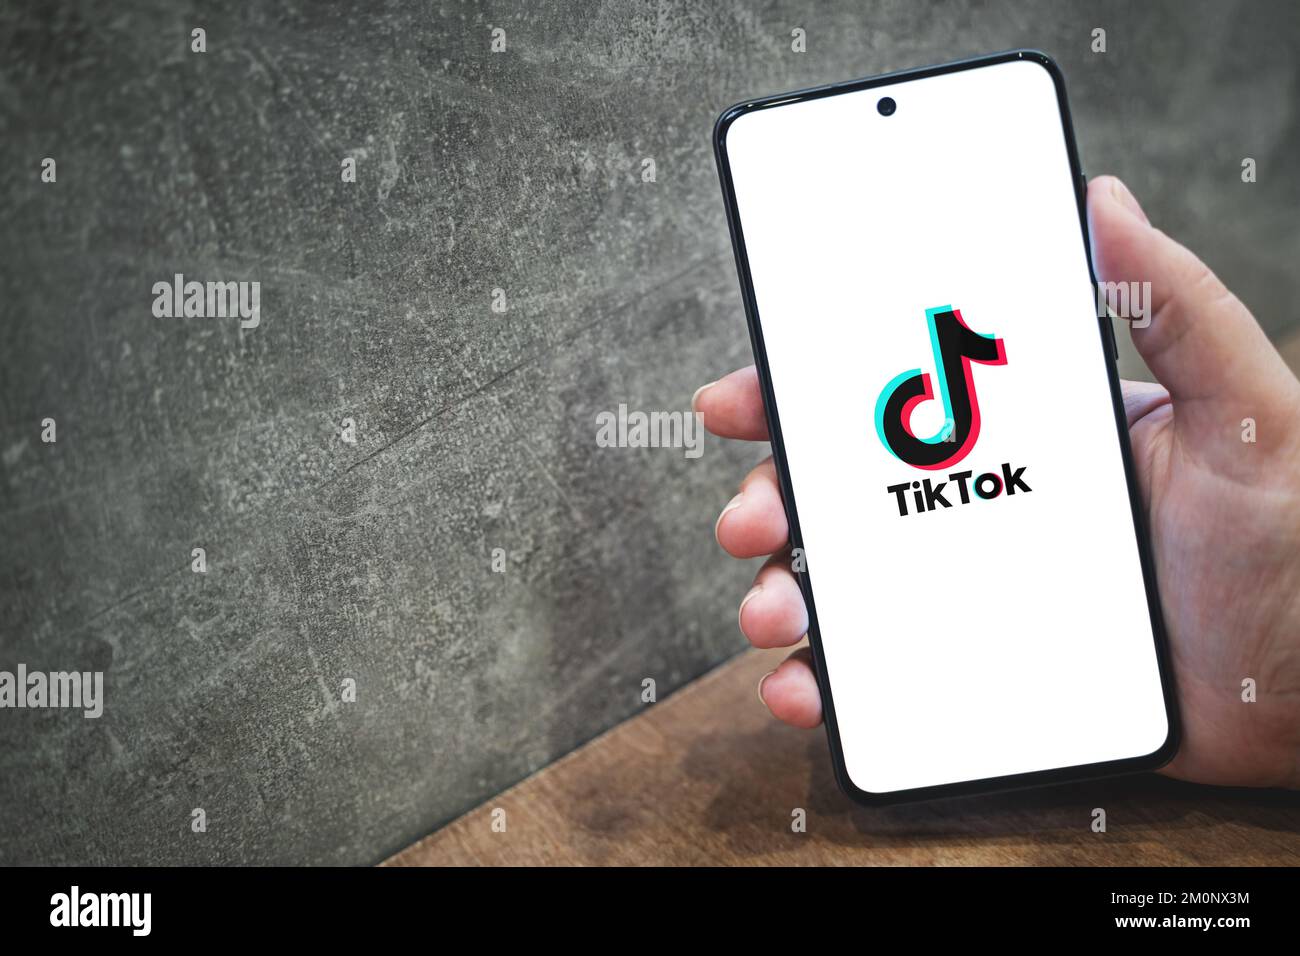 Logo de l'application Tik tok sur l'écran du smartphone en main, arrière-plan concret avec espace de copie pour le texte. Icône de l'application Tiktok sur les réseaux sociaux. Cracovie, Pologne - 11 novembre 2022. Banque D'Images